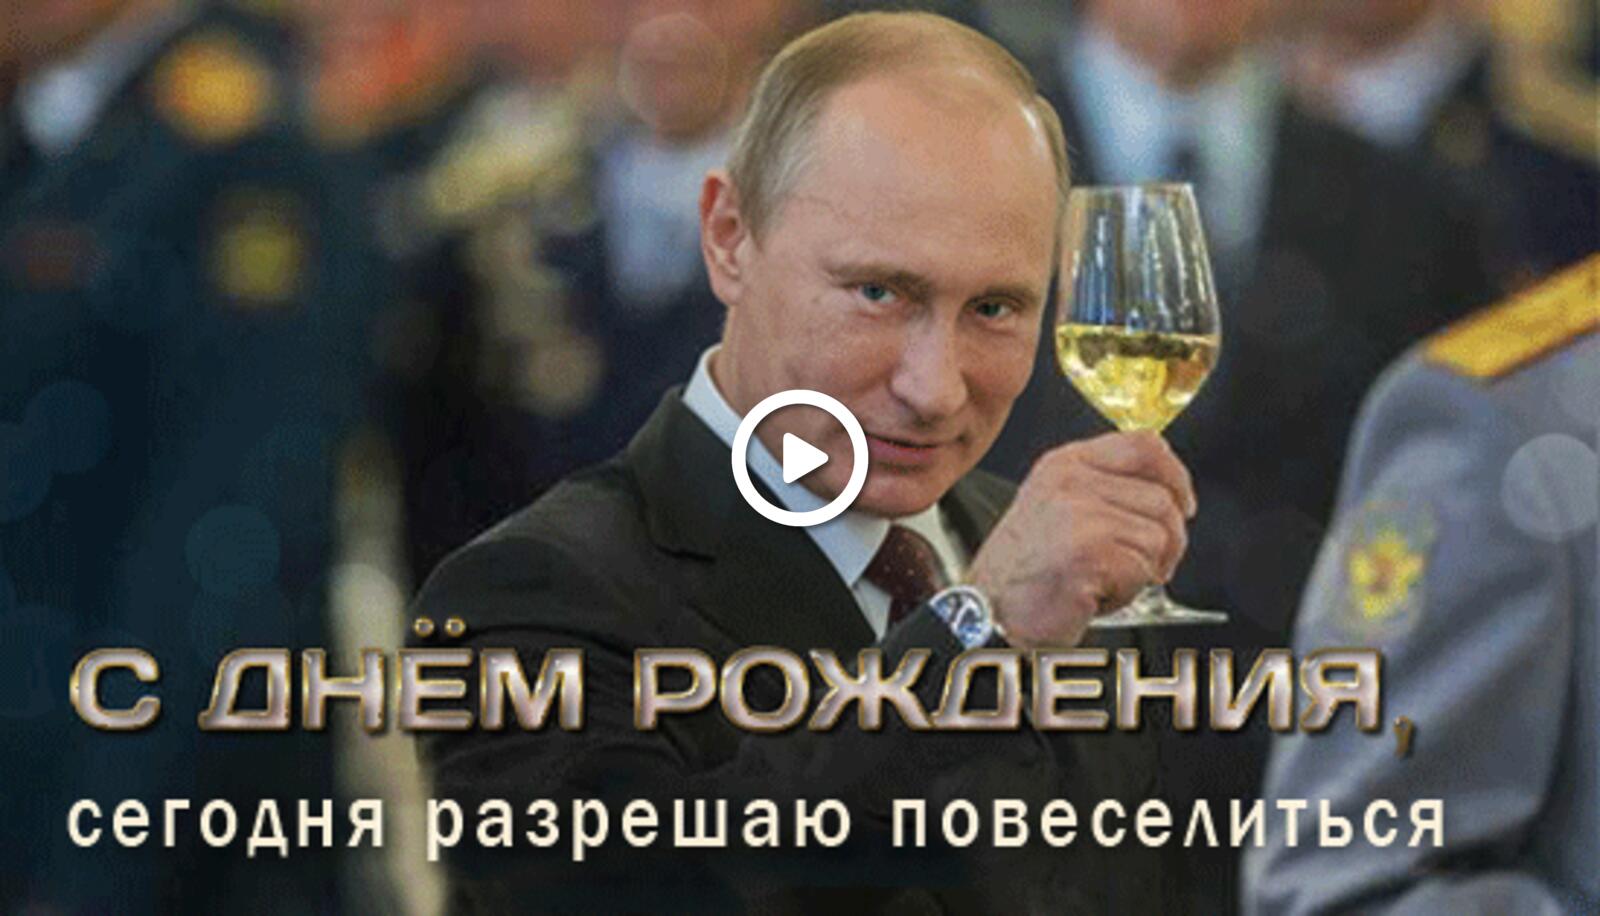 Поздравление светланы путиным. С днё рождения от Путина. С днём рождения отпуттна. С жнем рлждения ТТ Путина.